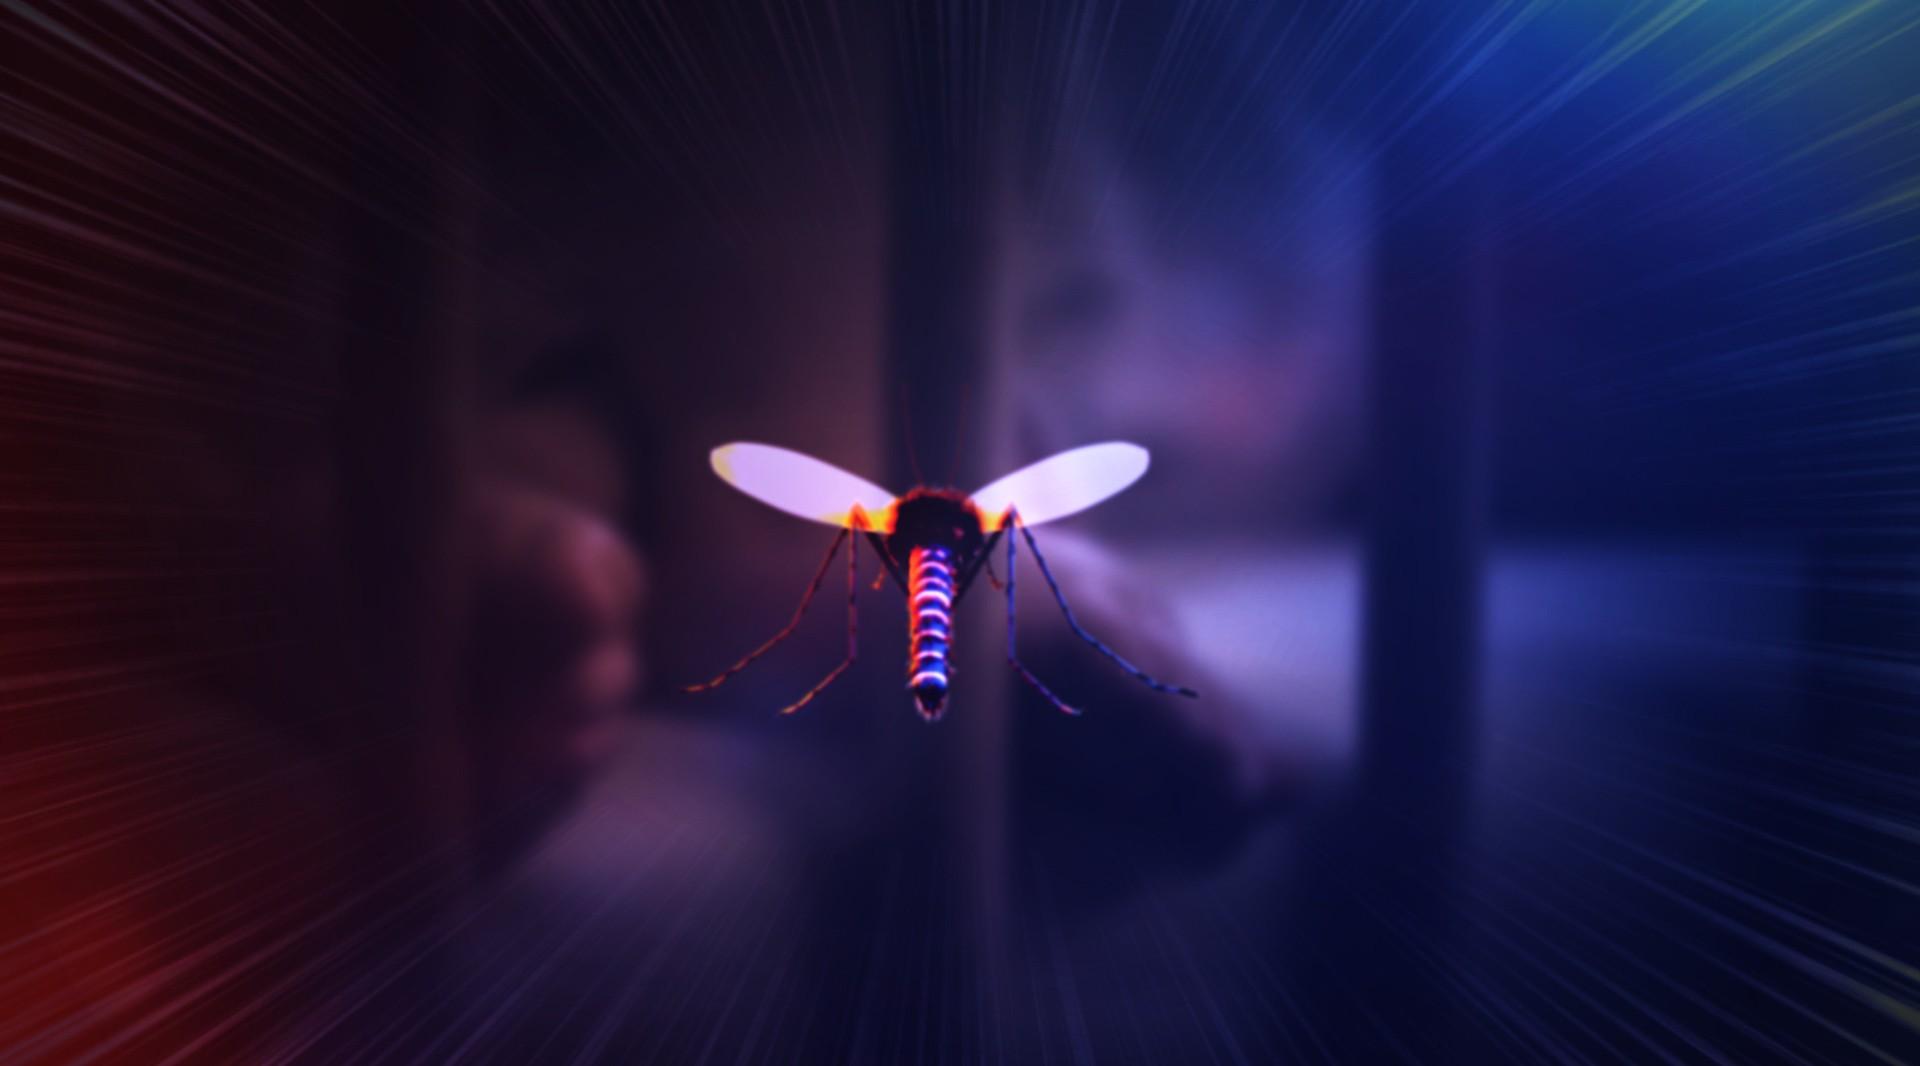 罗贝特电热驱蚊器3D动画主图视频